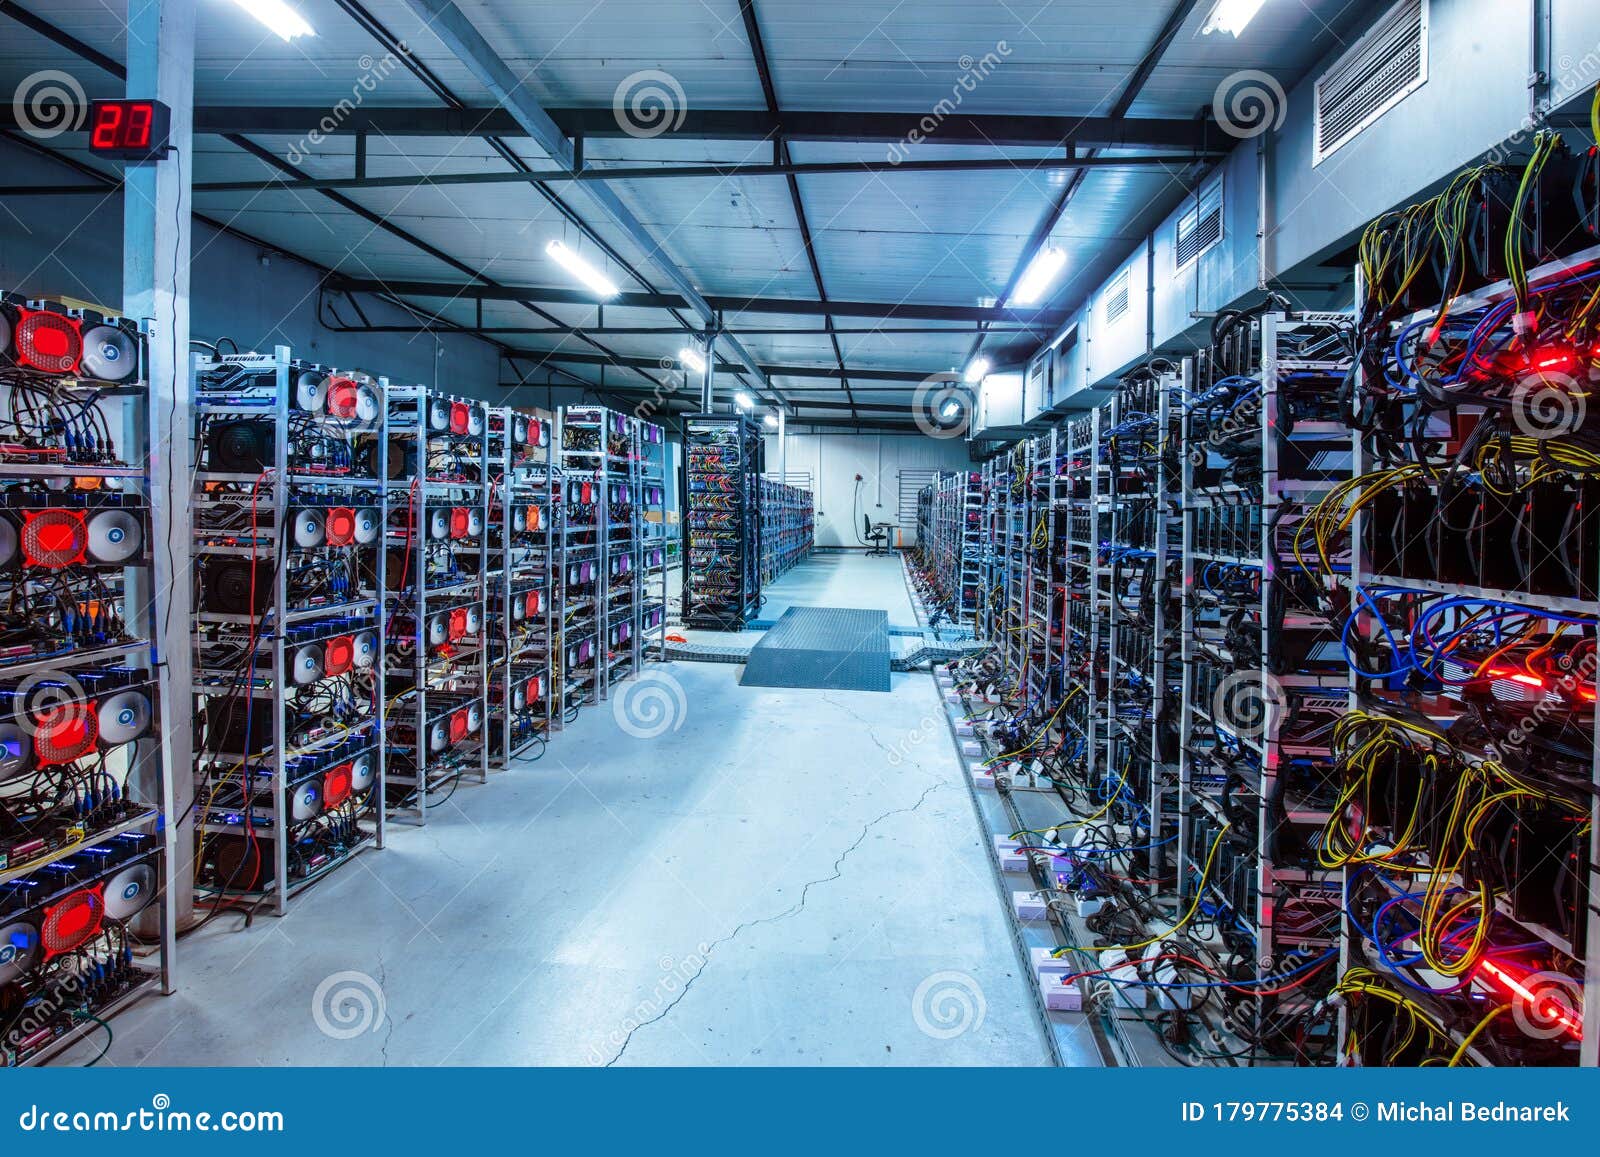 Bitcoin And Crypto Mining Farm. Big Data Center Stock Photo - Image of